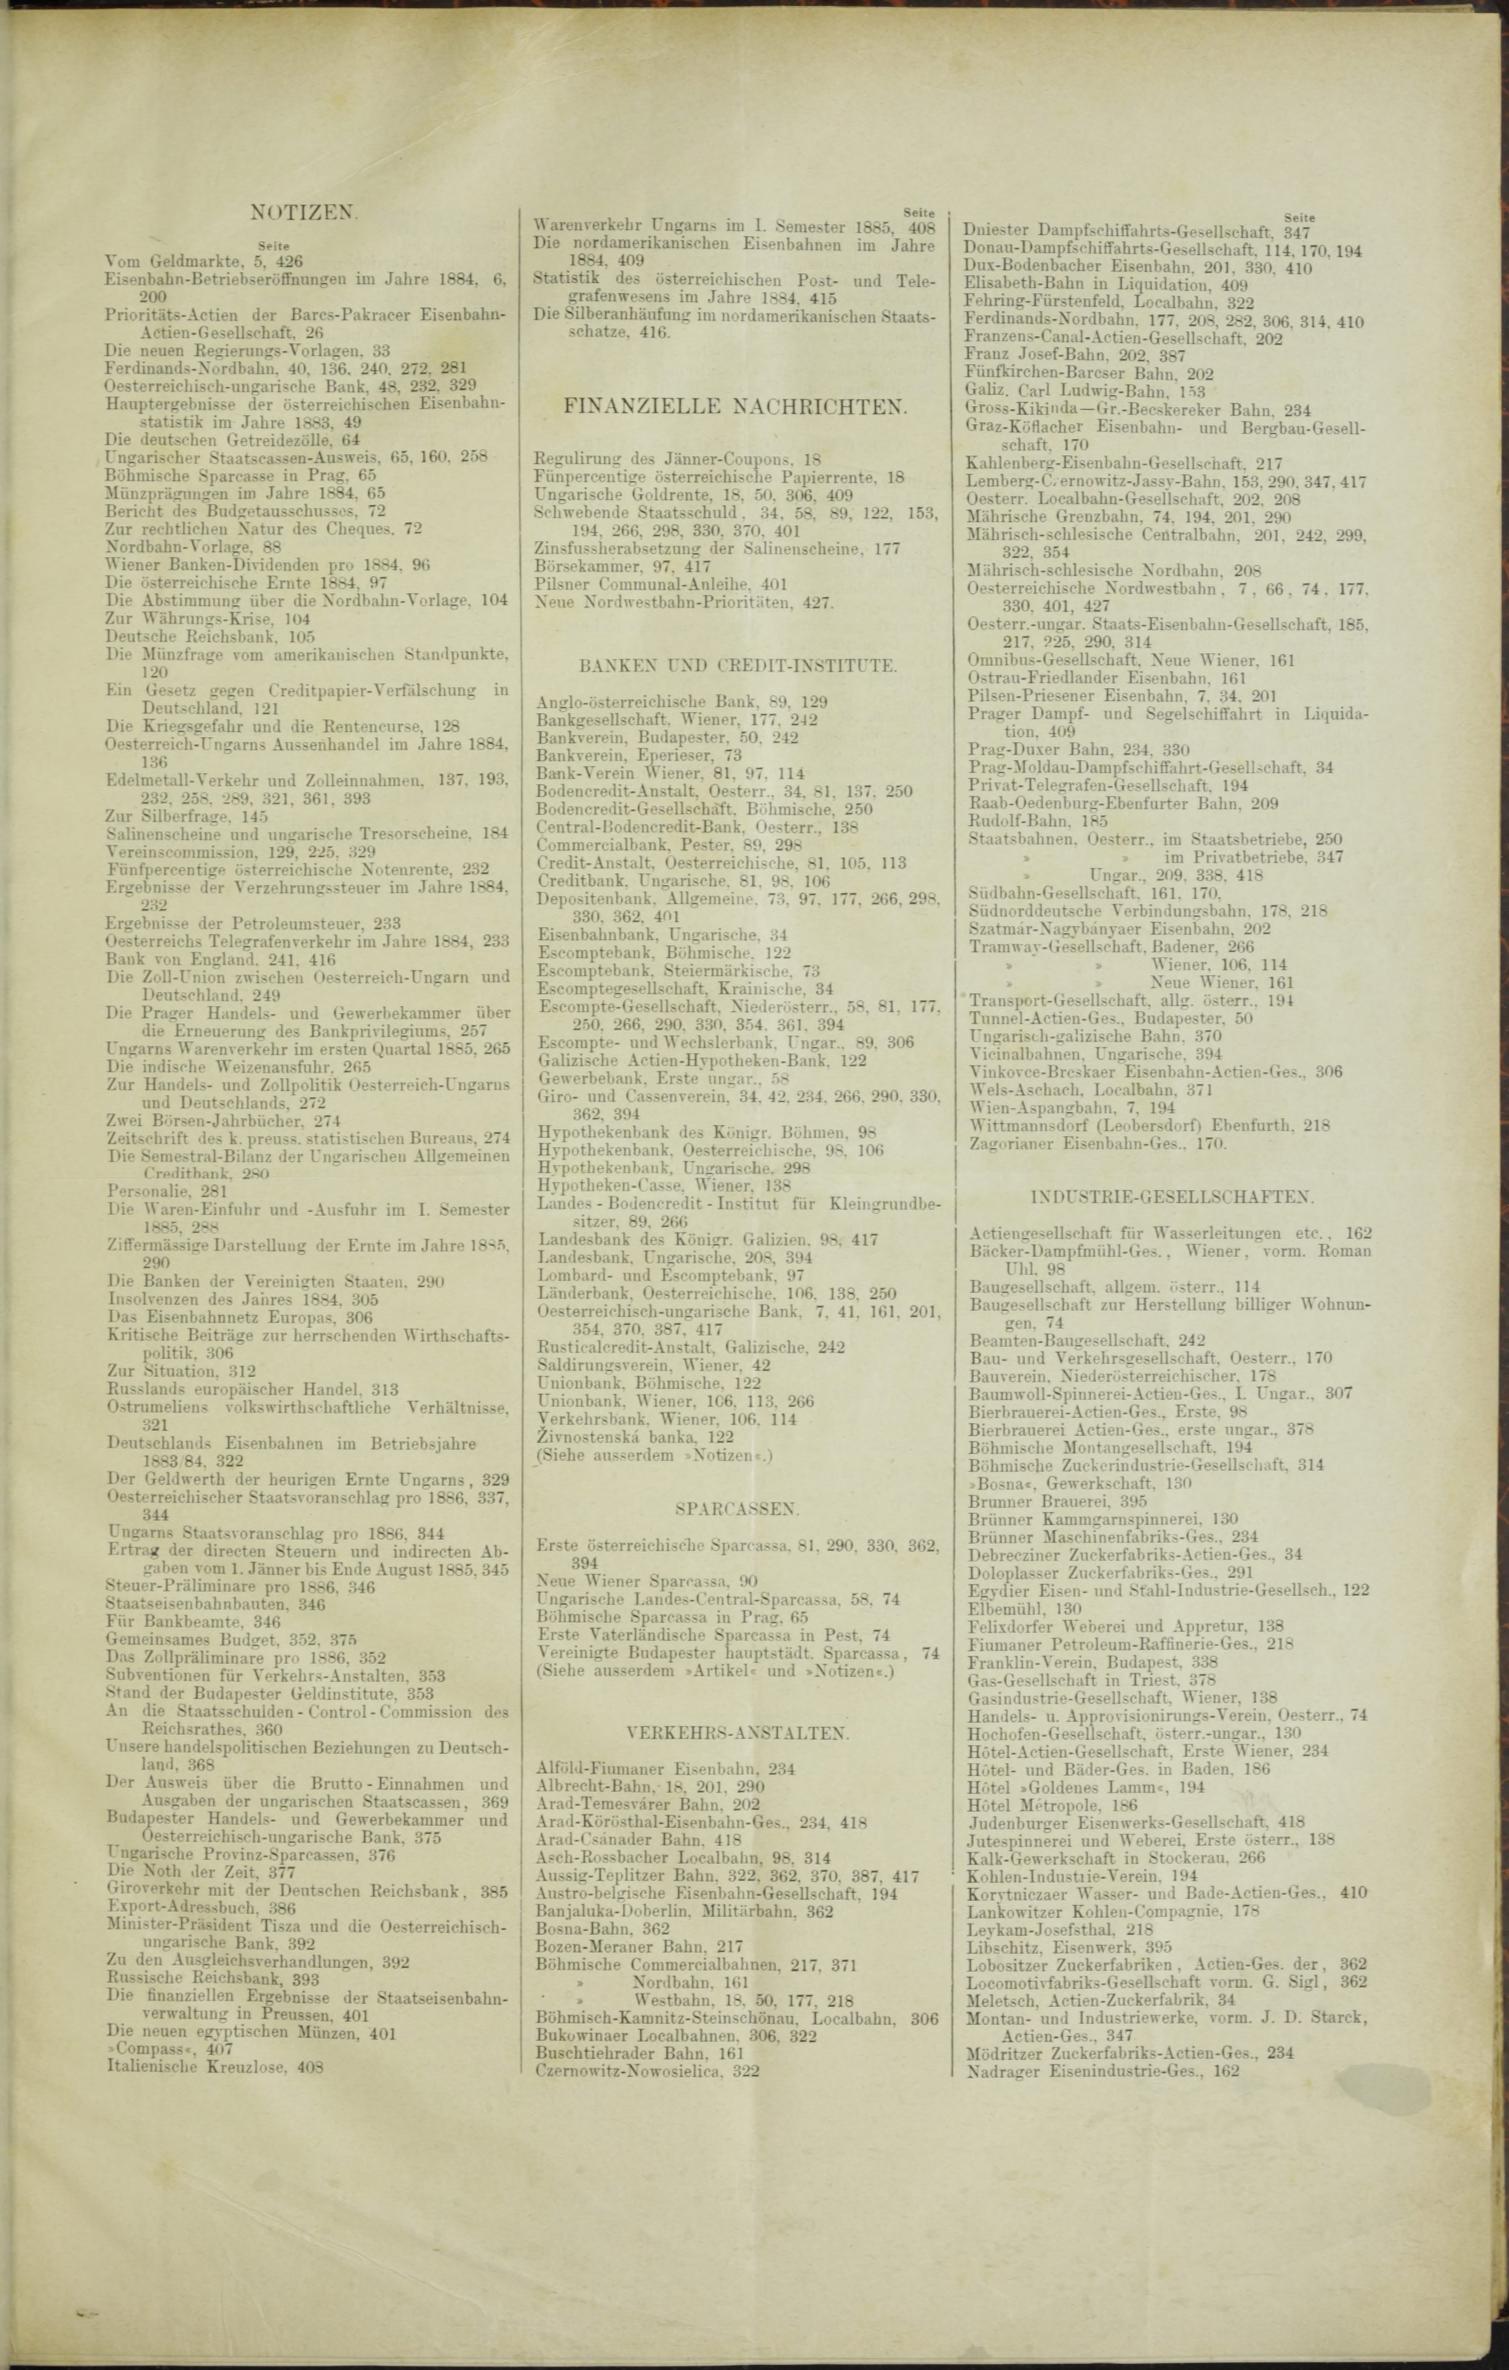 Der Tresor 01.10.1885 - Seite 9